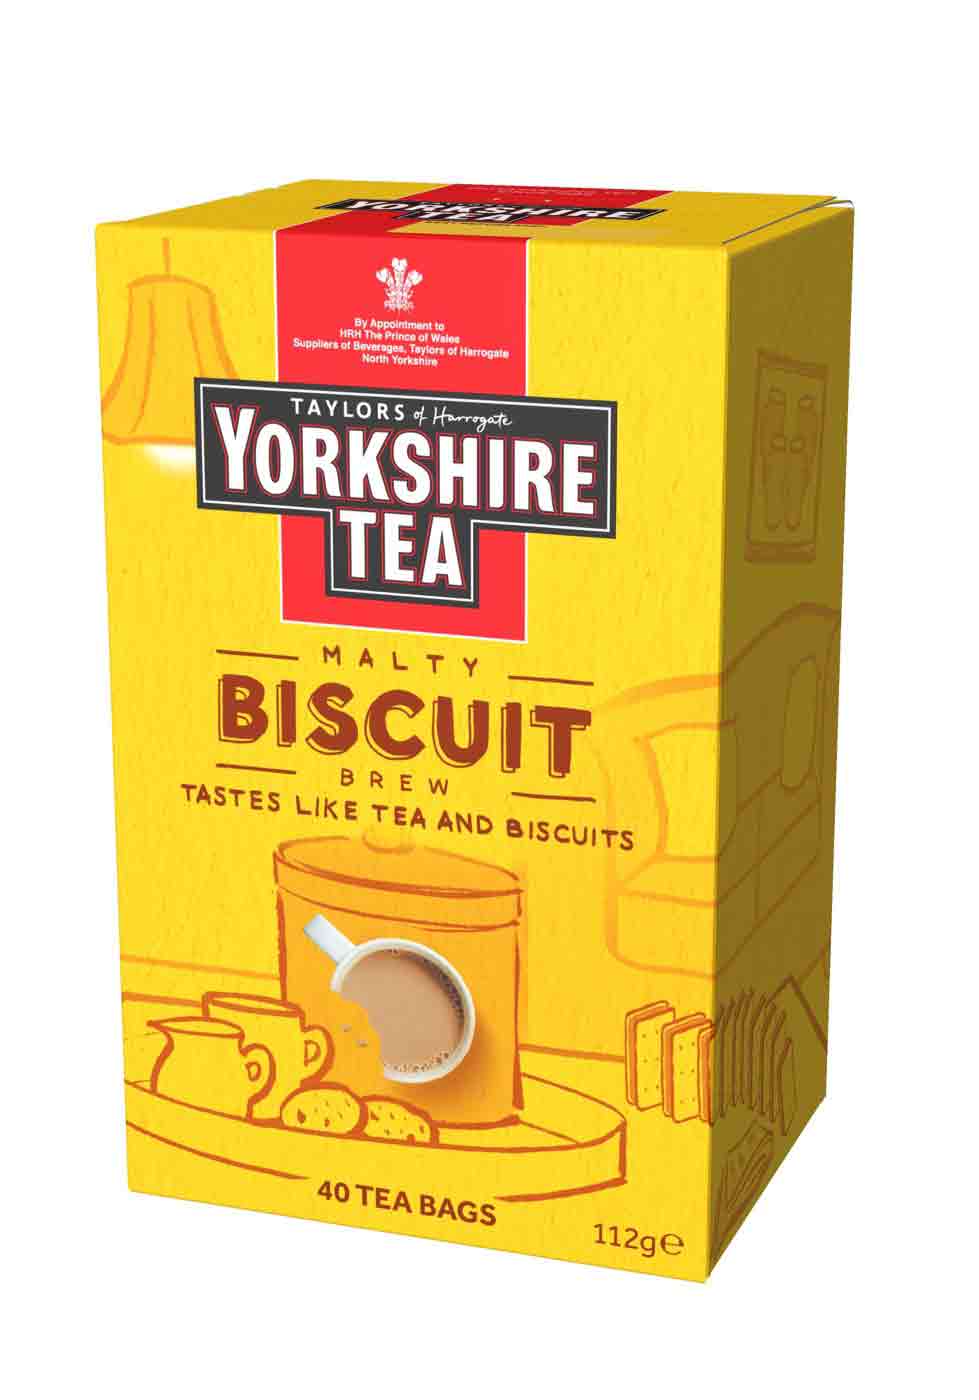 Box of Yorkshire Tea Biscuit brew 40 tea bags